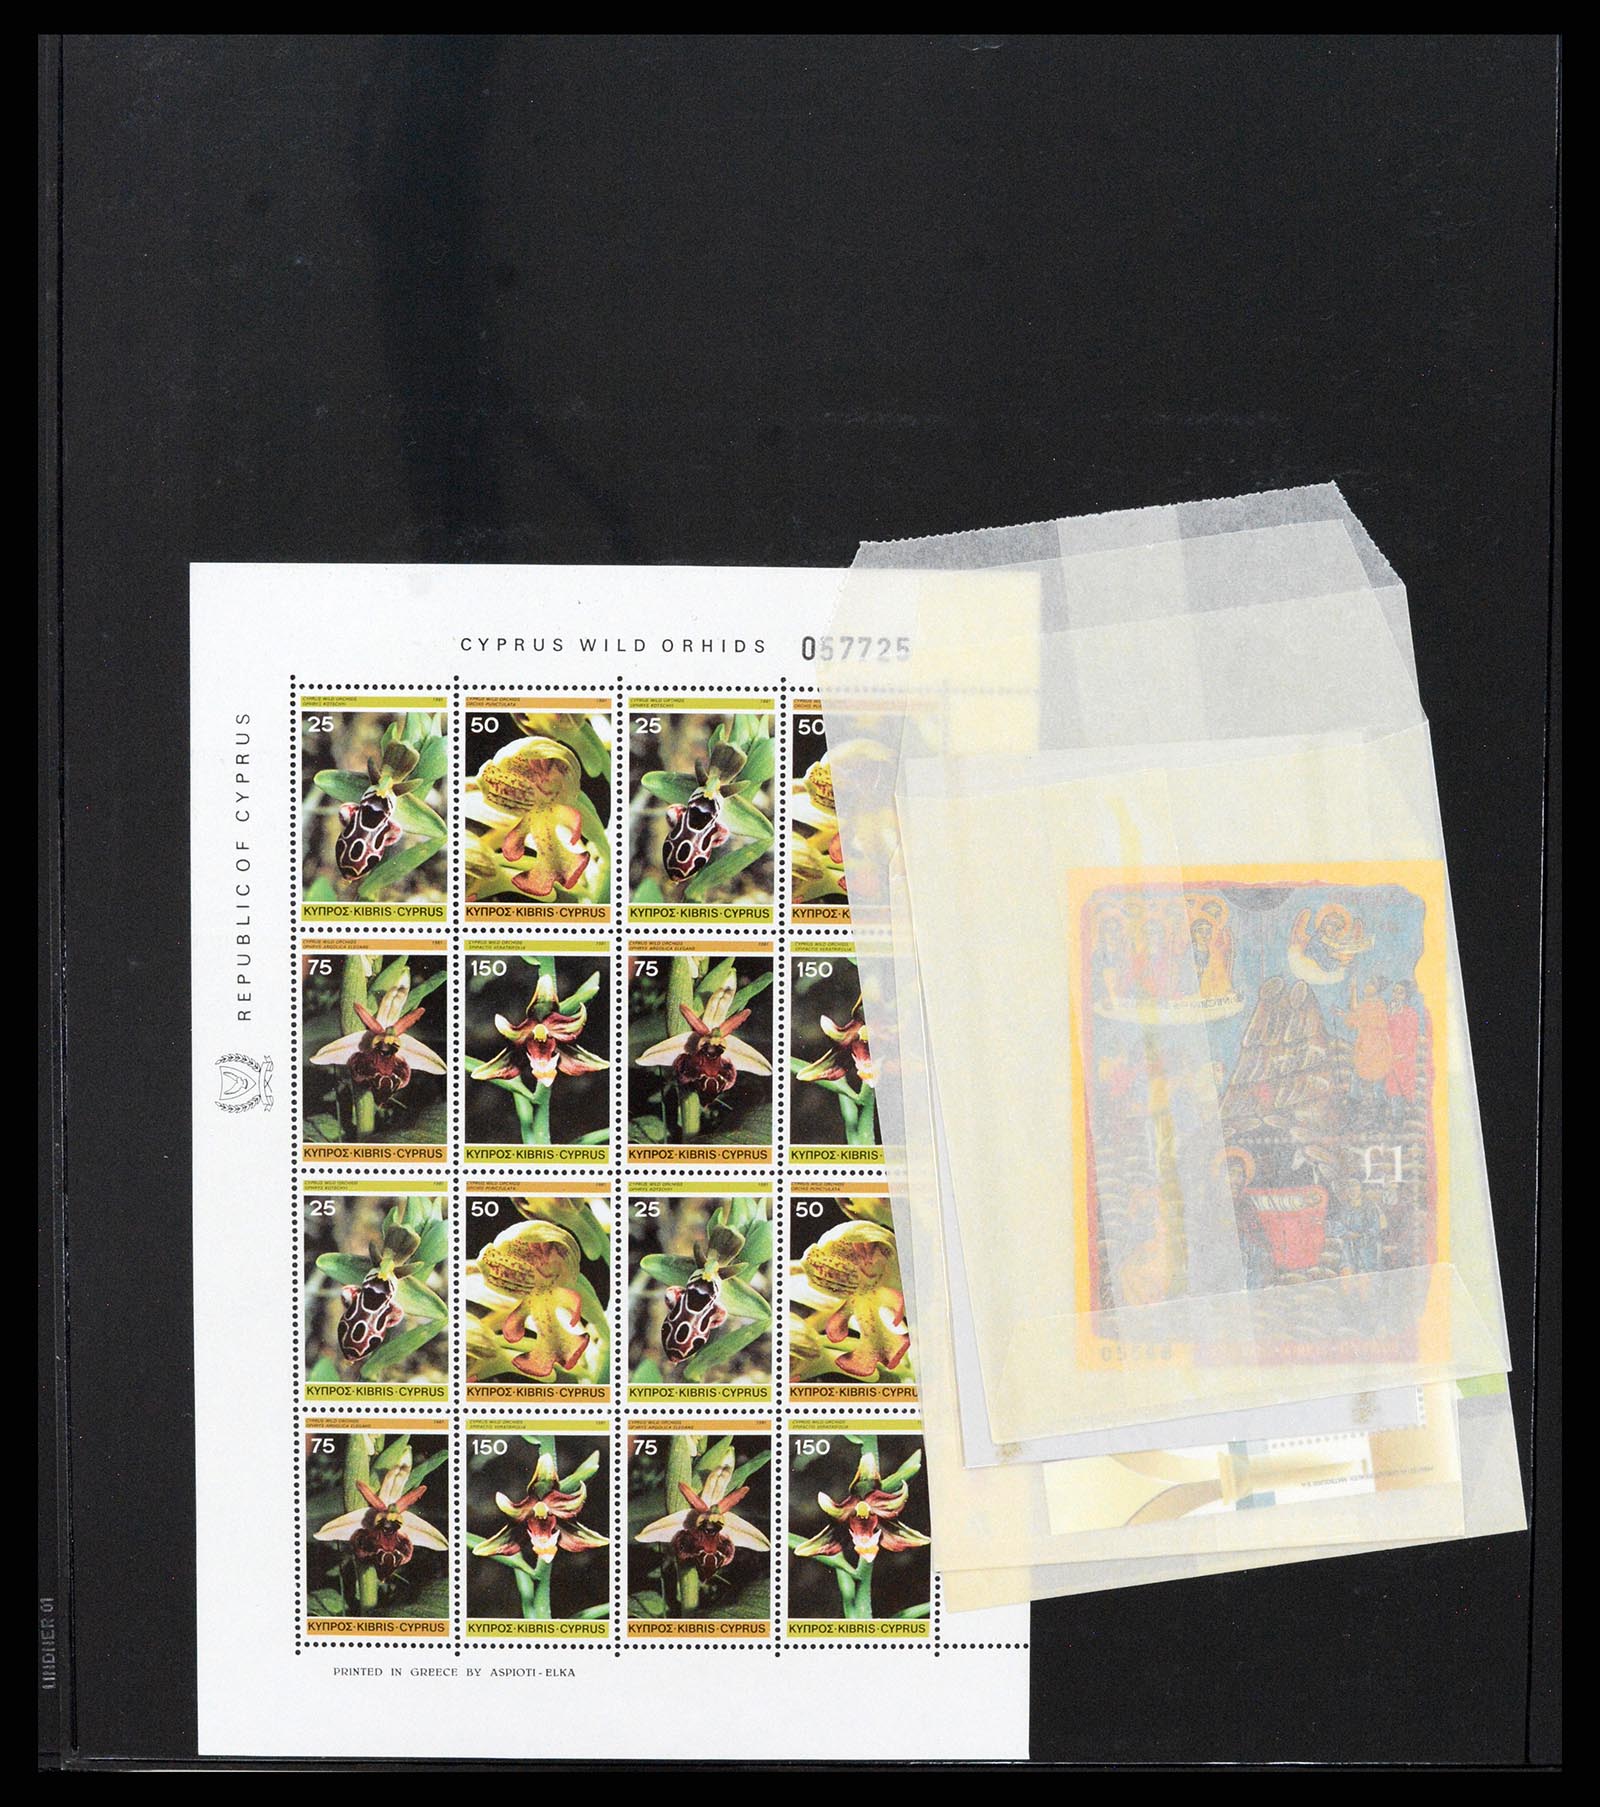 37345 021 - Stamp collection 37345 European countries souvenir sheets.